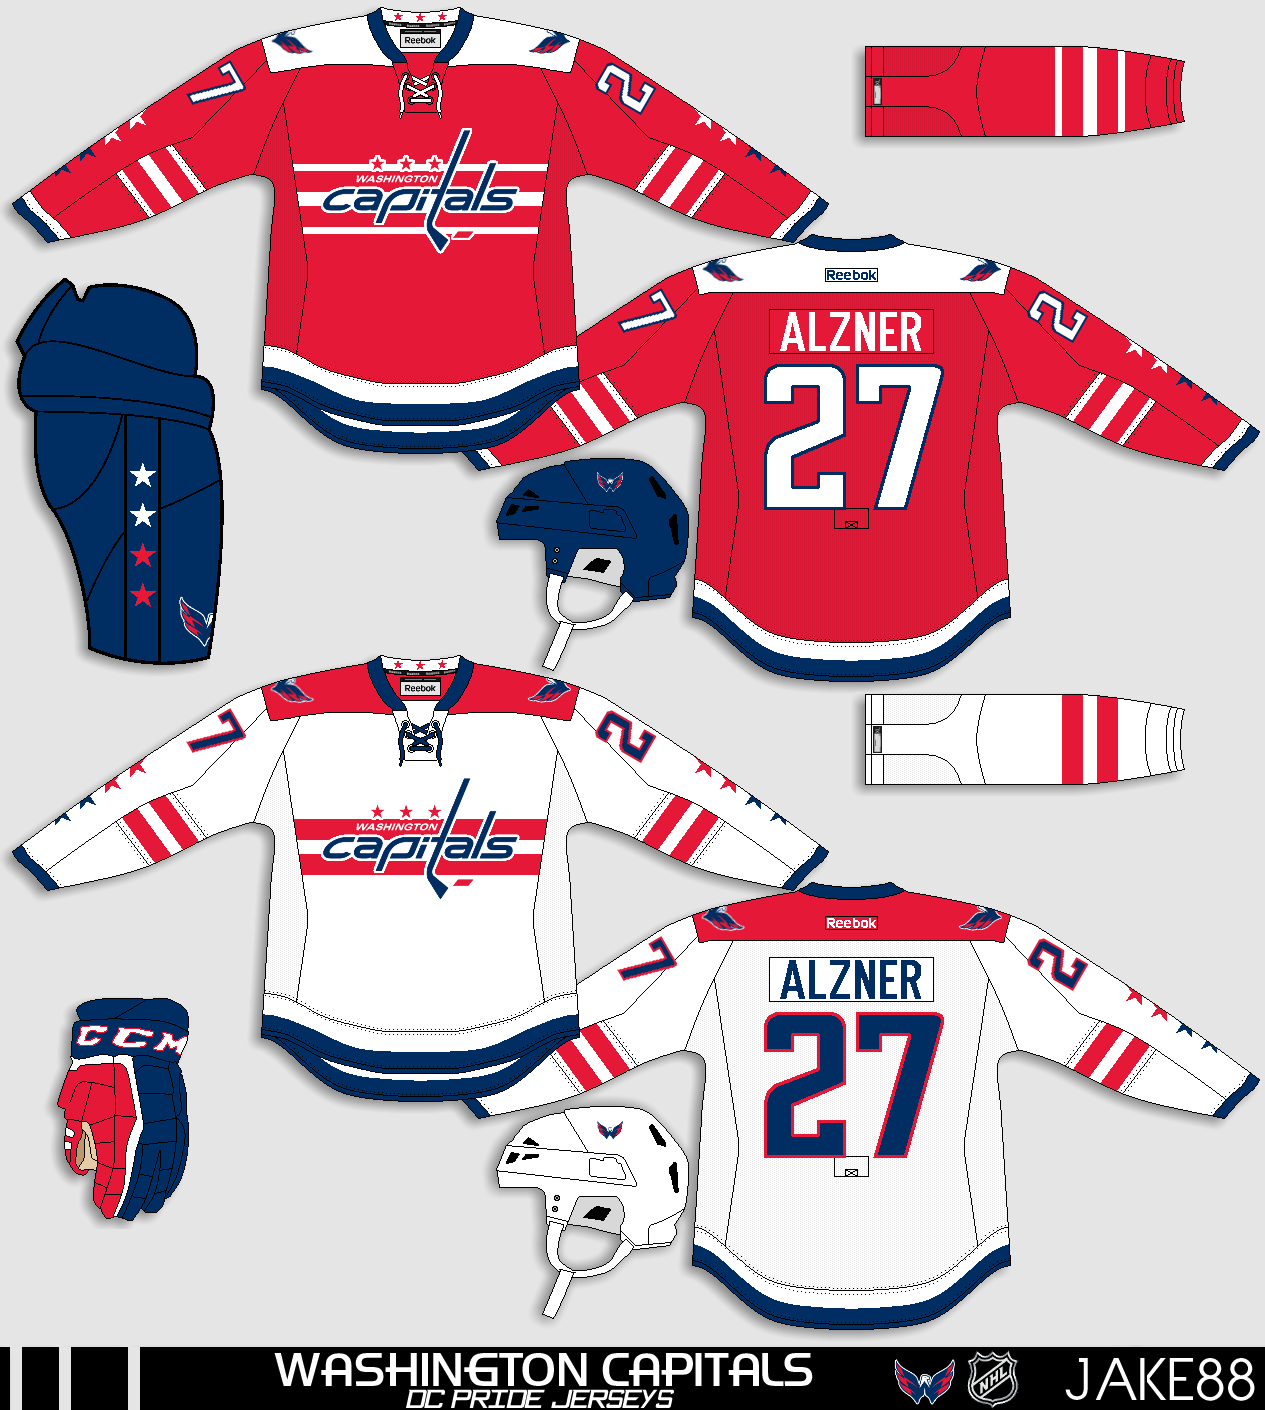 AJH Hockey Jersey Art: NHL Adidas concept: Washington Capitals